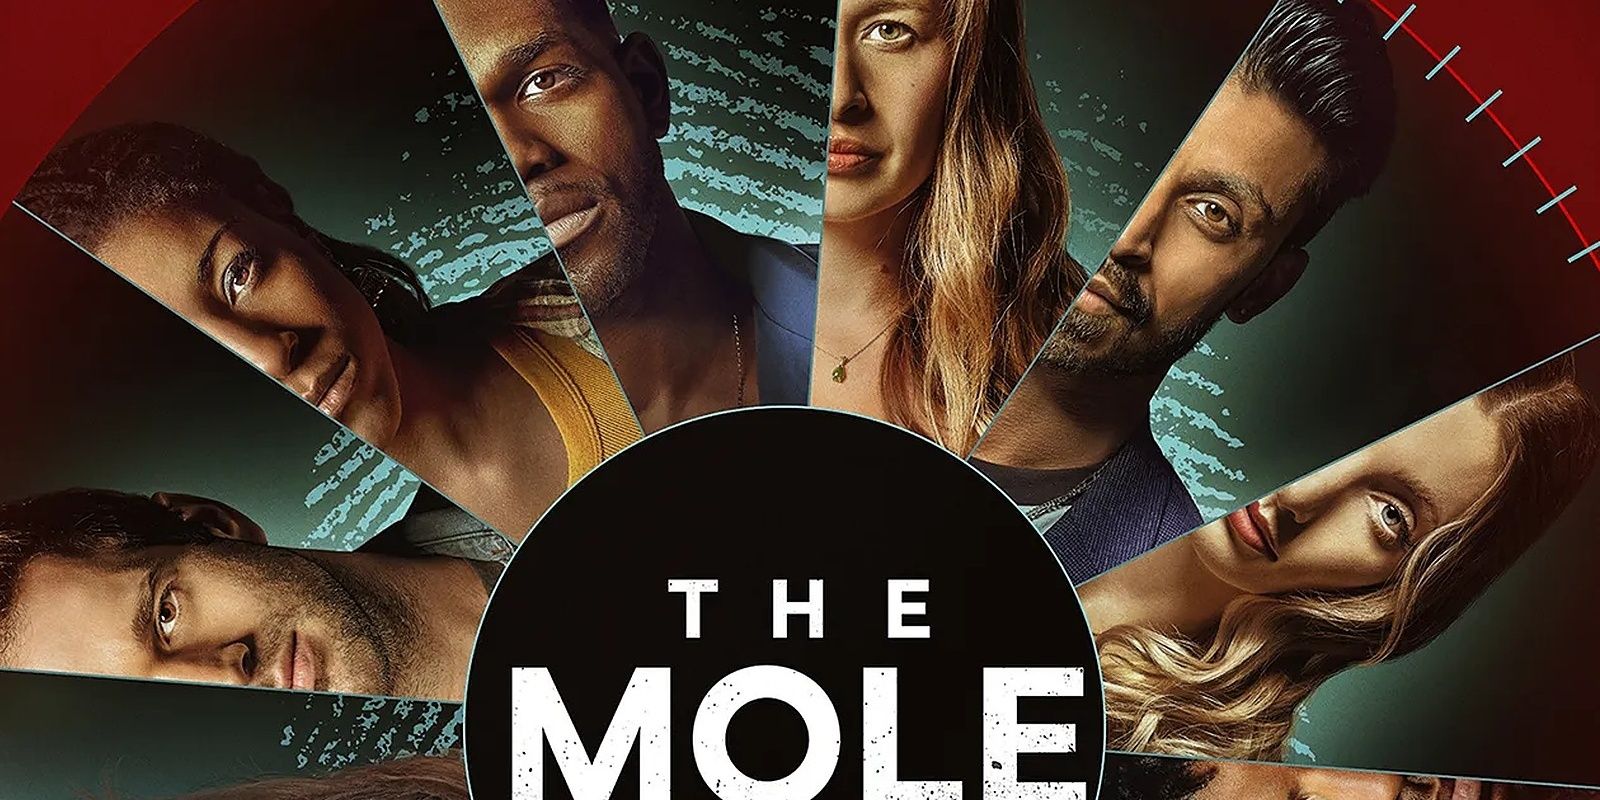 The Mole Season 1 Cast